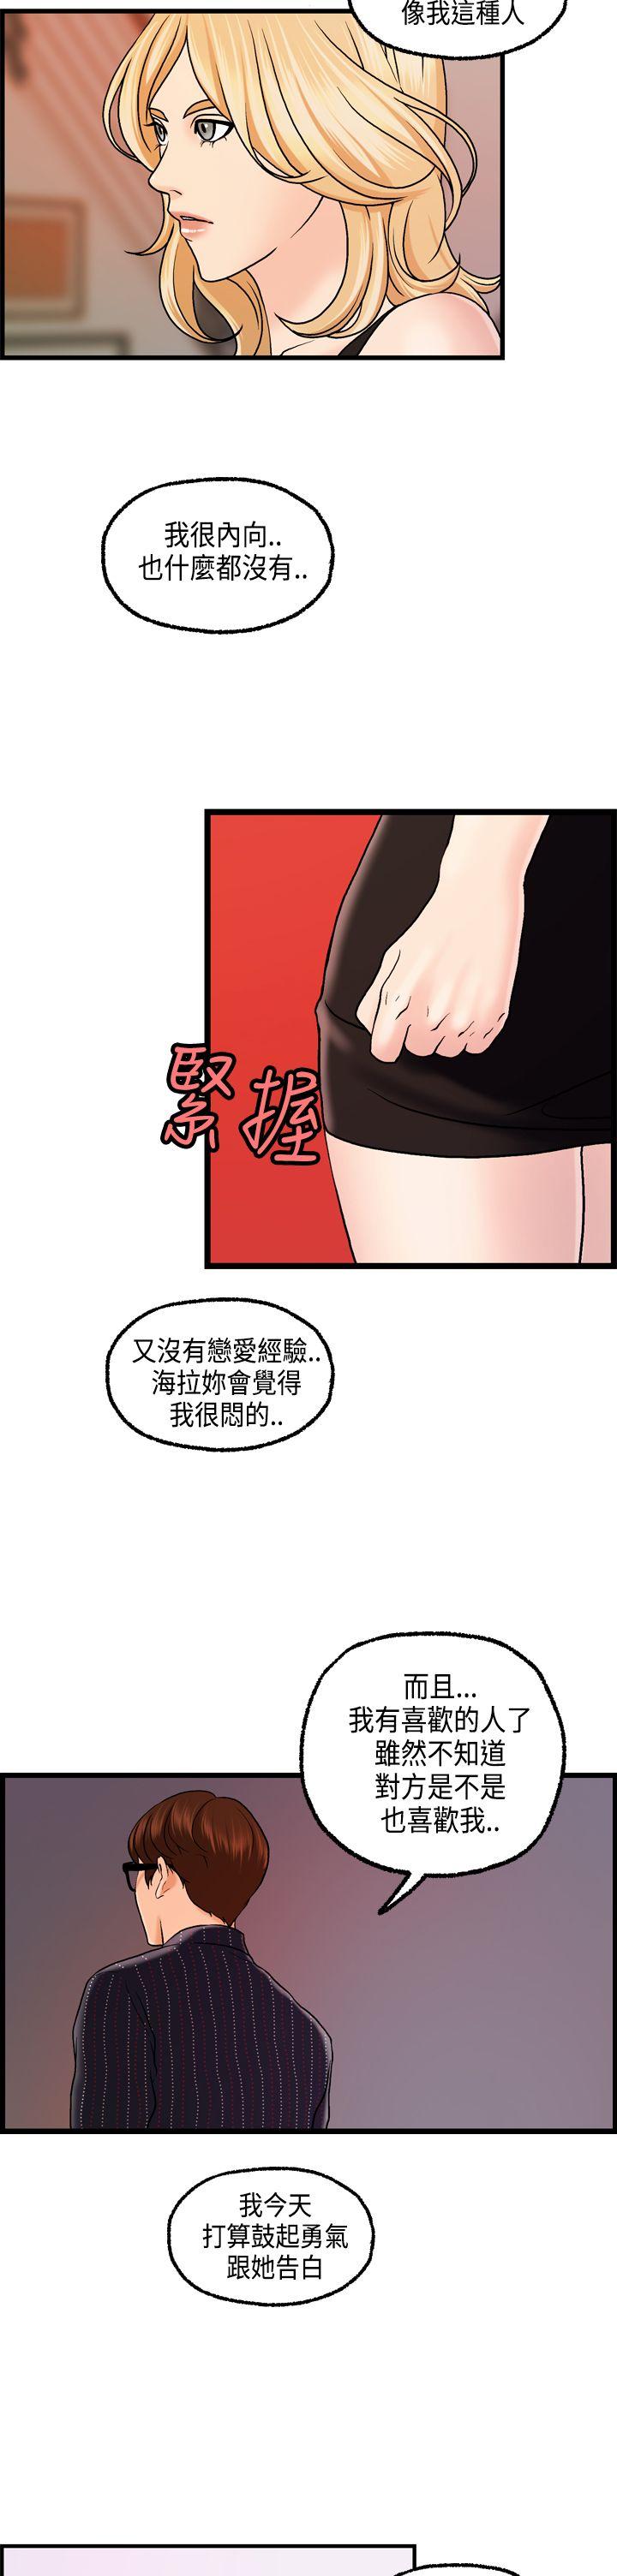 韩国污漫画 激情分享屋(完結) 第24话 20